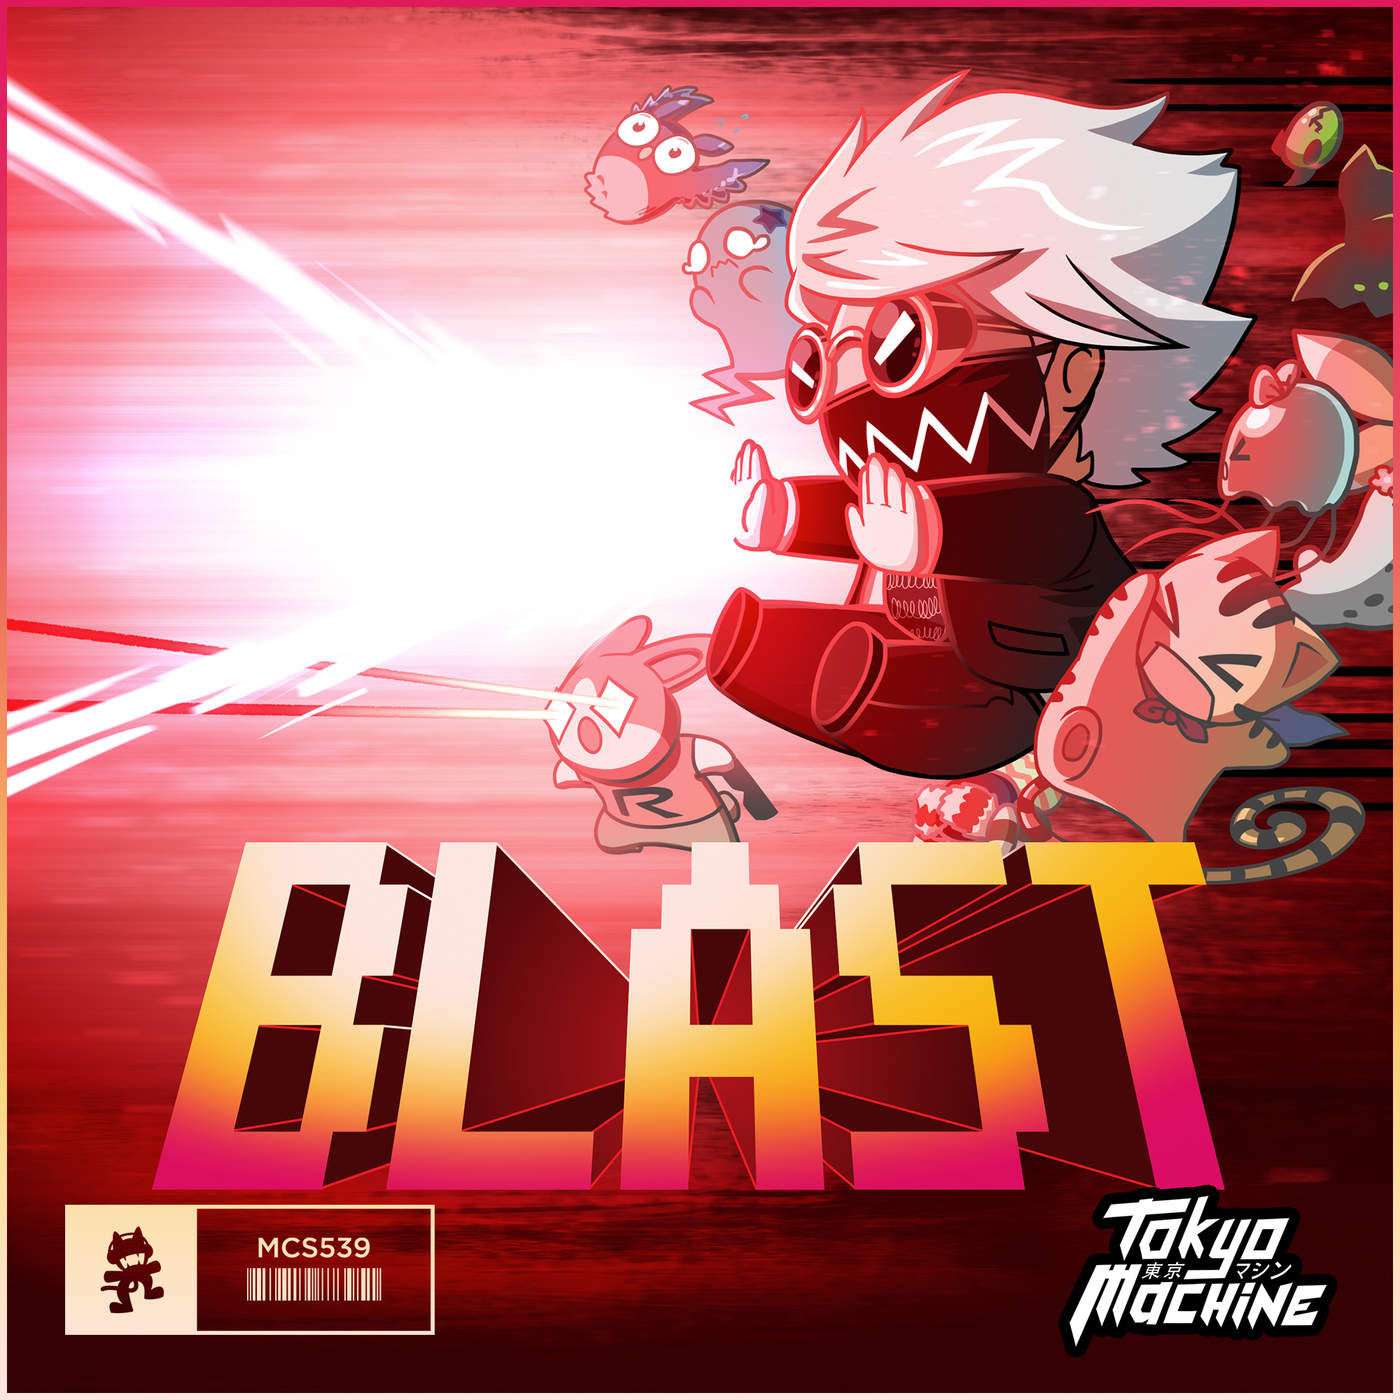 Tokyo Machine - BLAST [Monstercat Release] (신남, 격렬, 비트, 8비트)